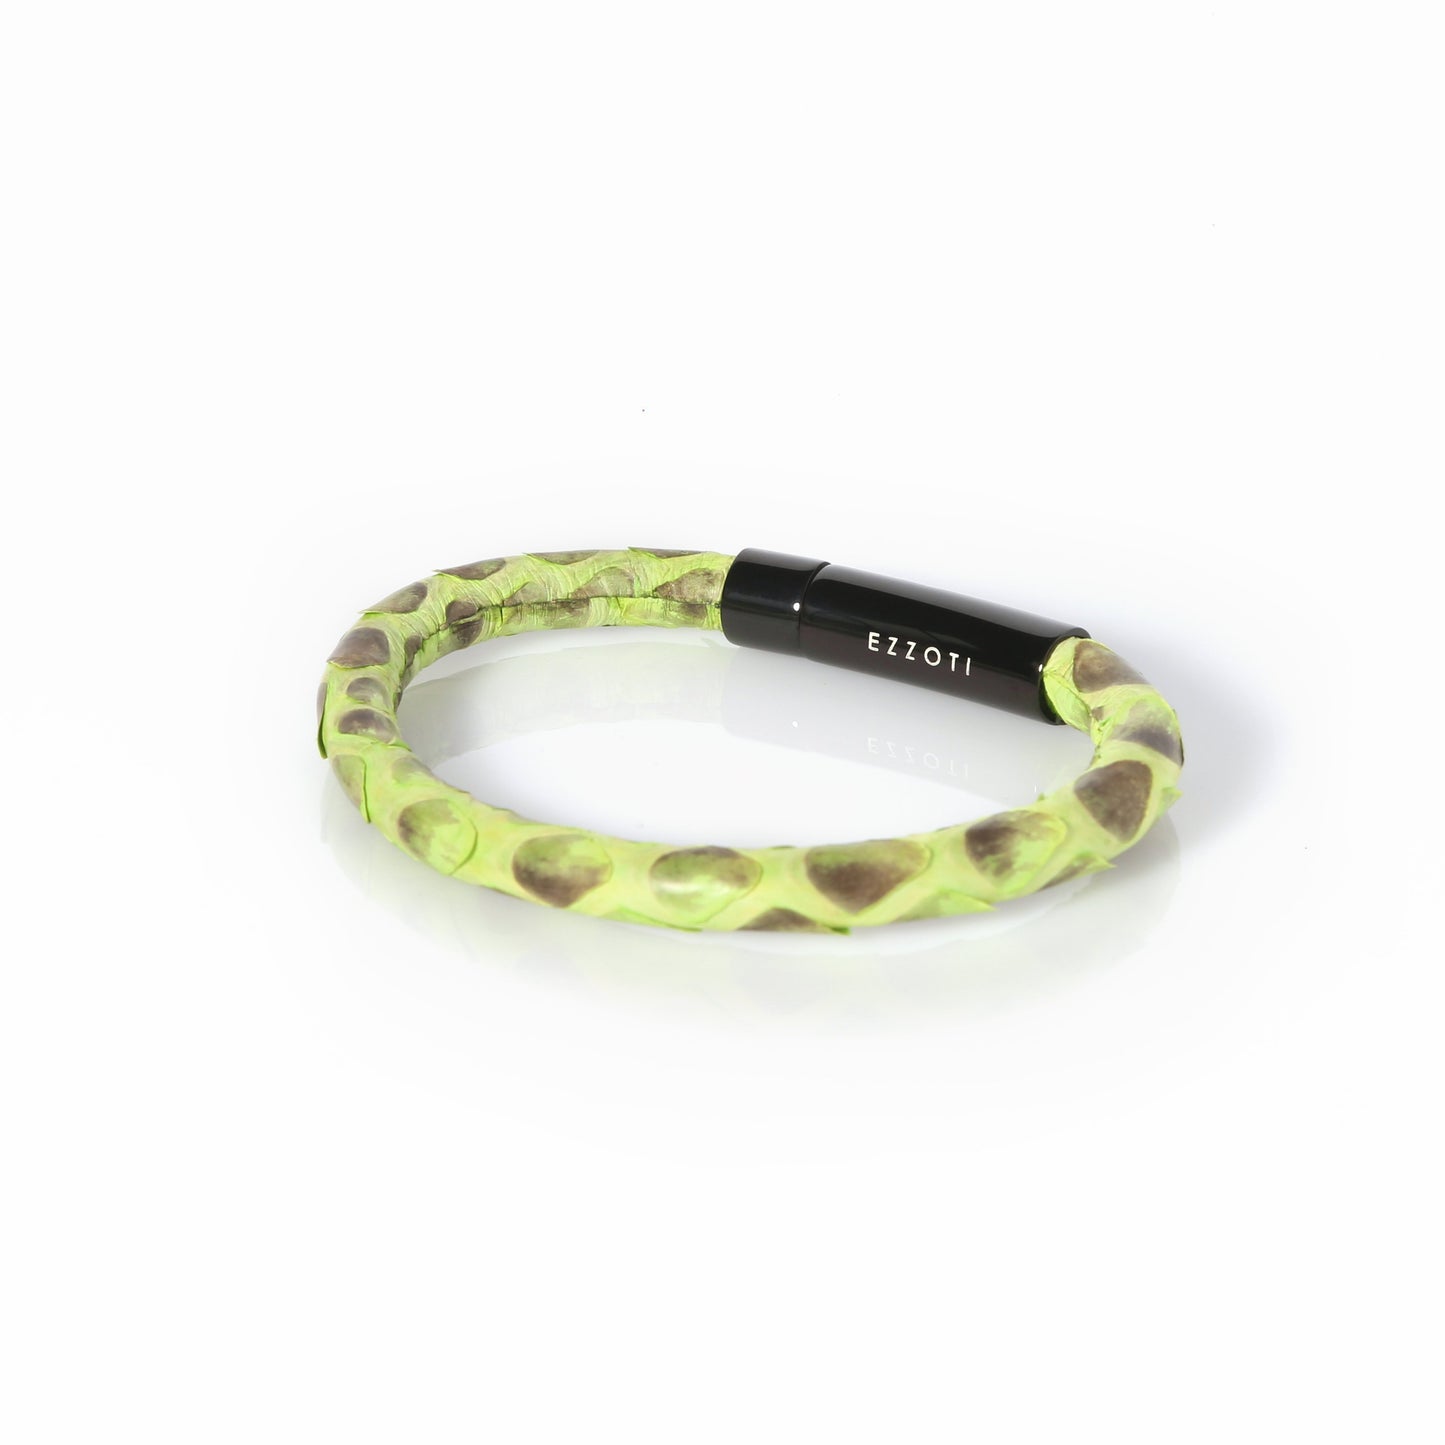 Amaris Genuine Python Leather Bracelet - Green/Black - EZZOTI